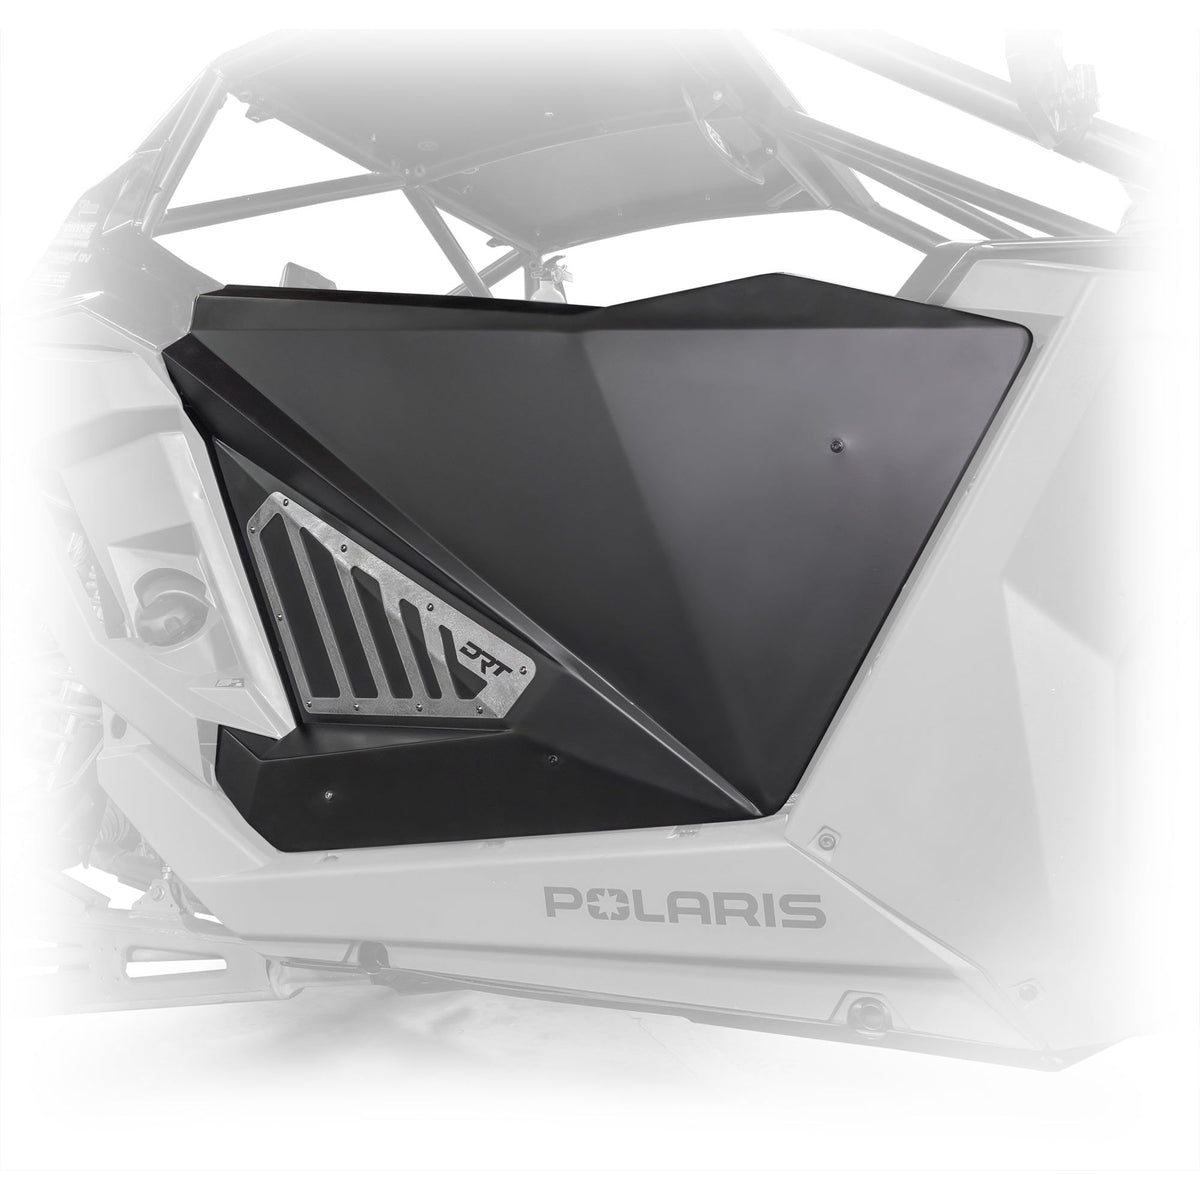 Polaris RZR Pro / Turbo R Aluminum Door Kit | DRT Motorsports